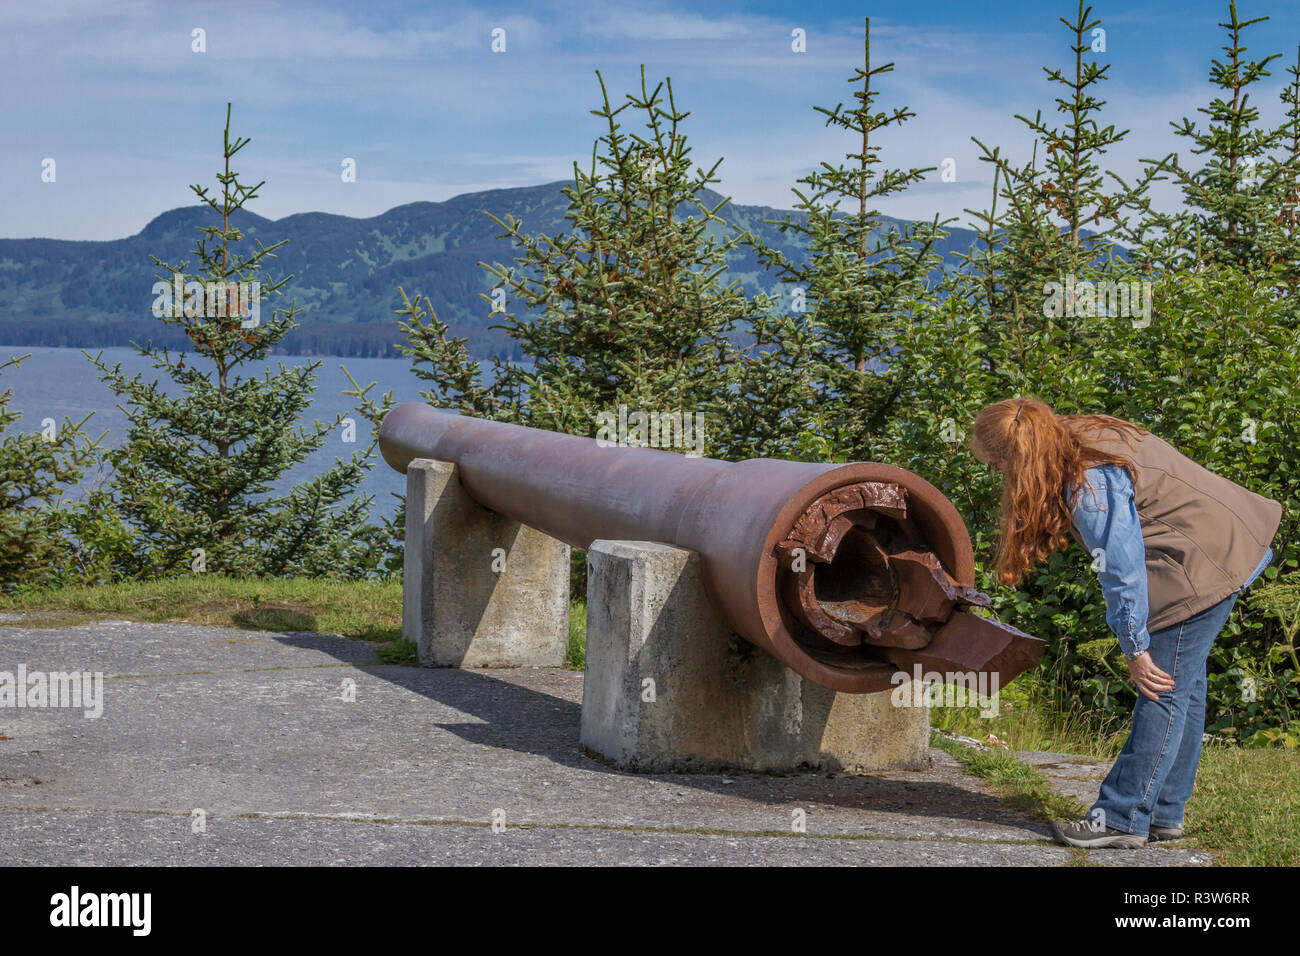 USA, Alaska, Kodiak. Woman inspecting un canon de 8 pouces à partir de la DEUXIÈME GUERRE MONDIALE, au point d'artillerie Miller à Fort Abercrombie. (MR) Banque D'Images